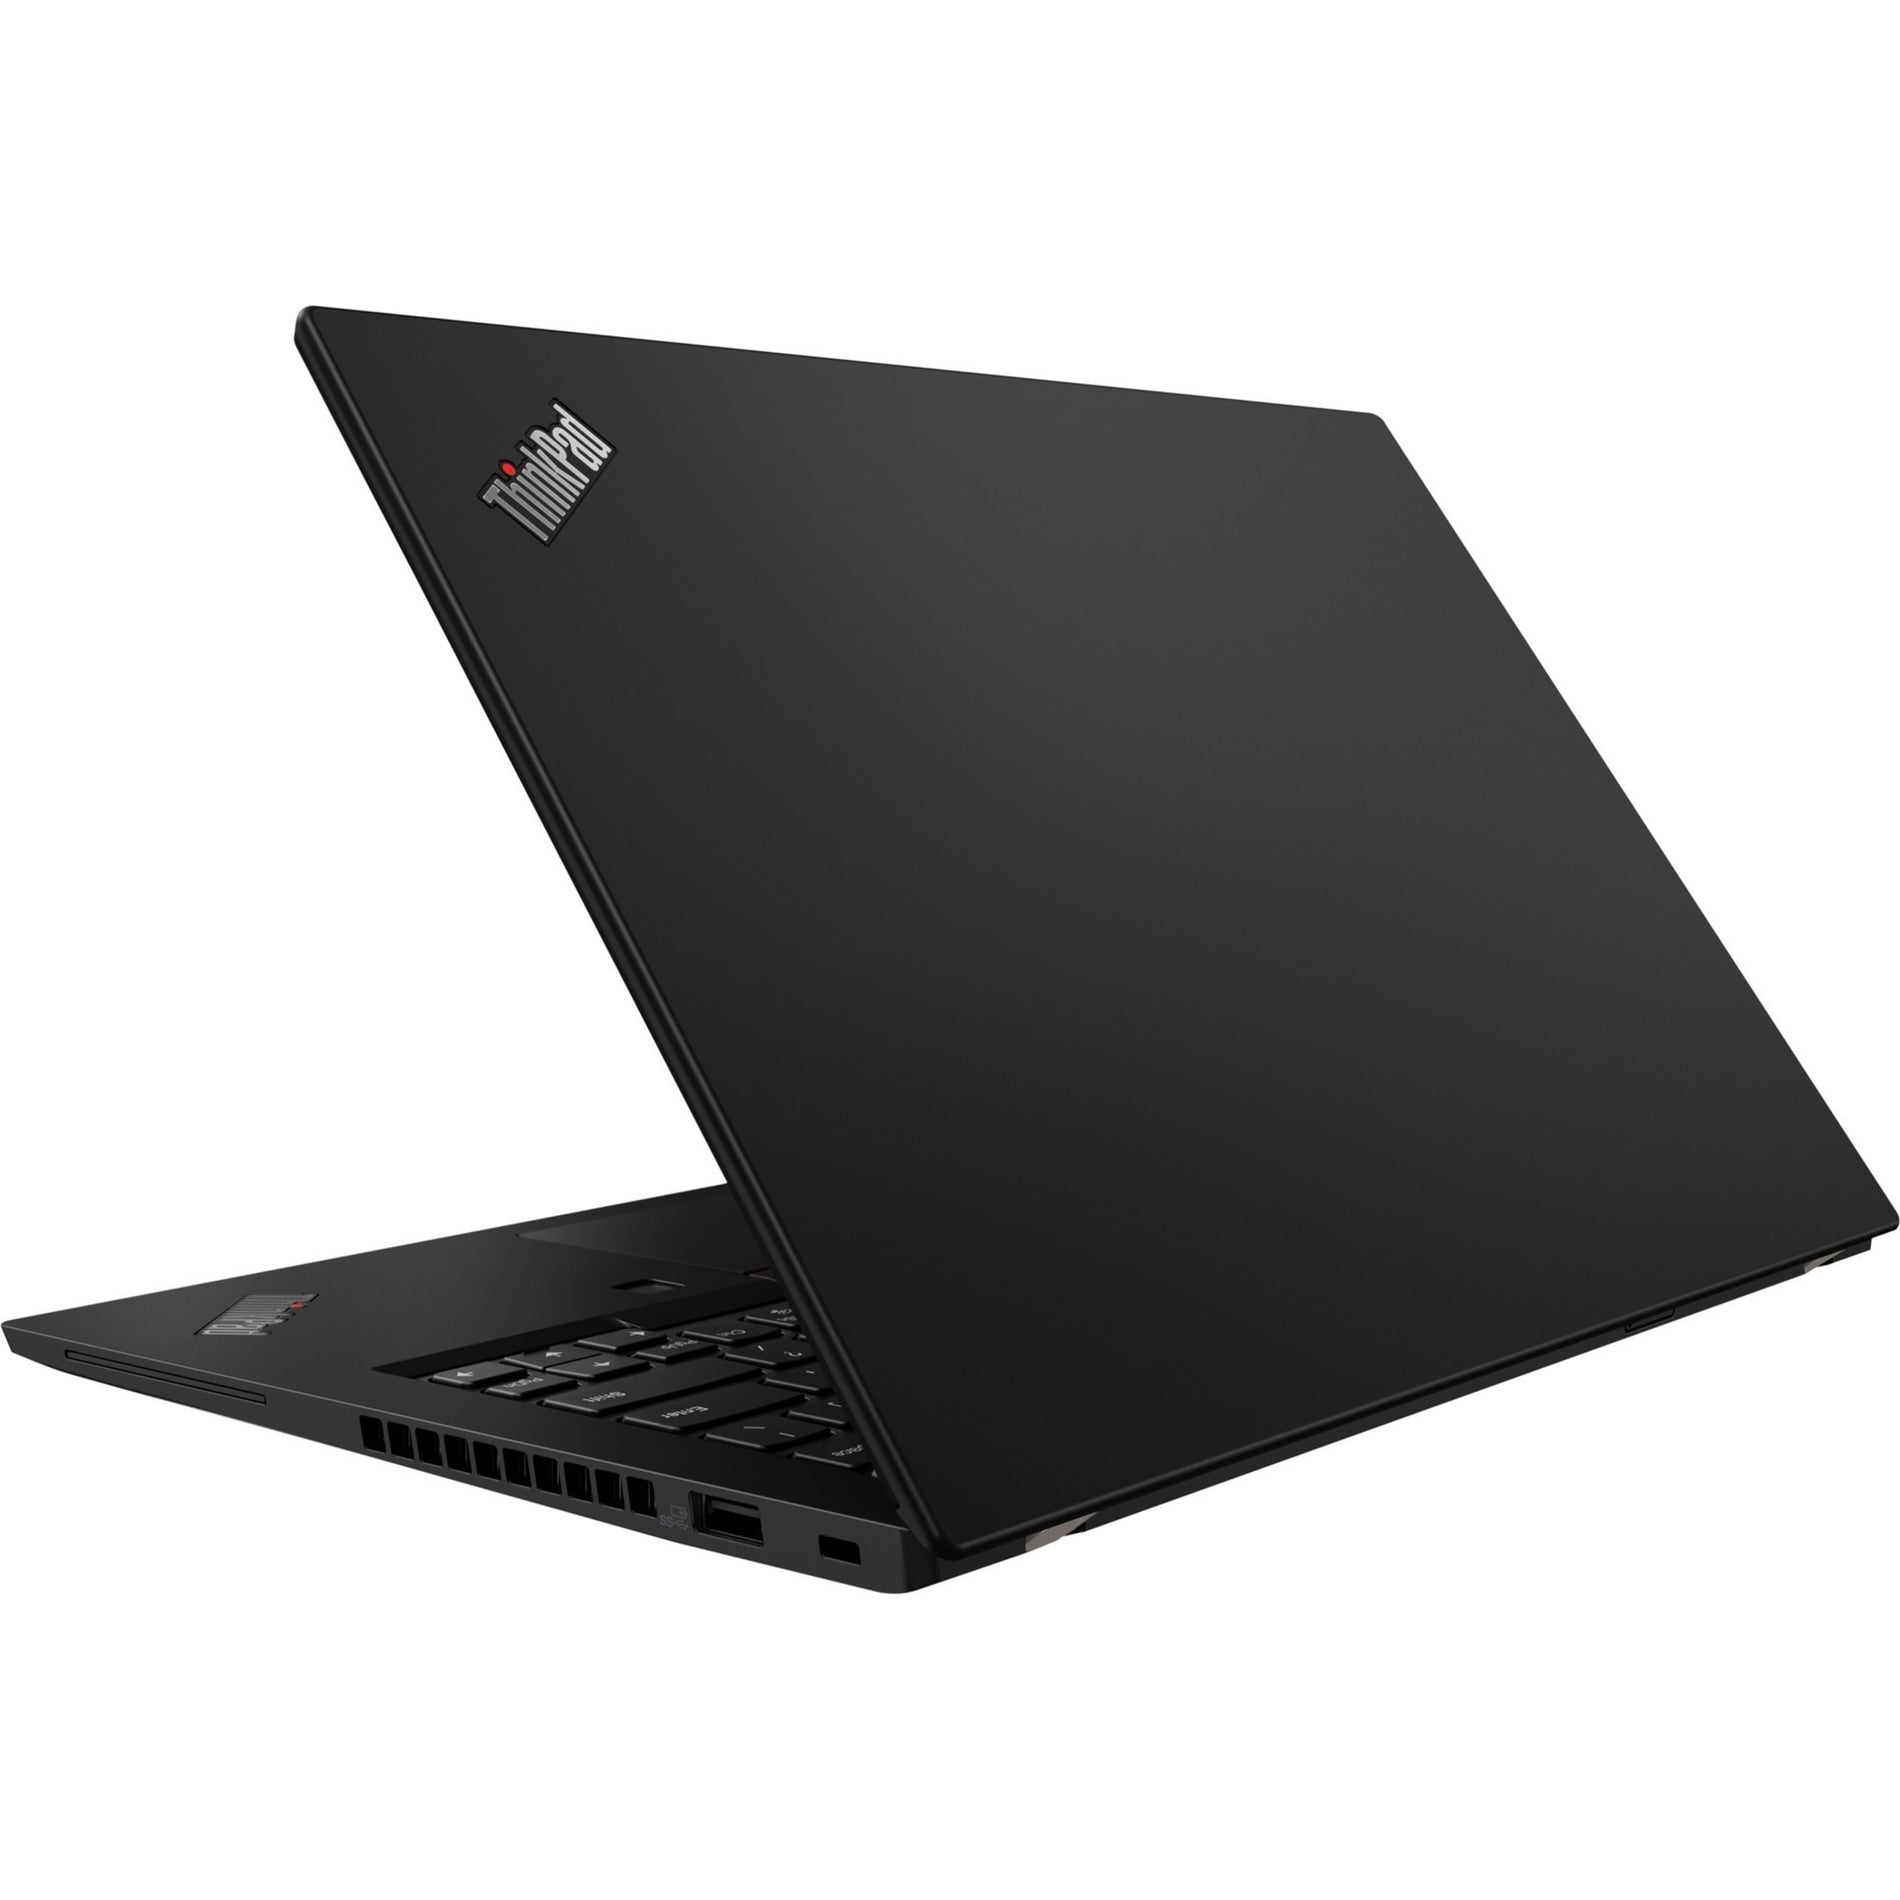 Lenovo 20T20021US ThinkPad X13 Gen 1 Notebook, Intel Core i5-10310U, 8GB RAM, 256GB SSD, Windows 10 Pro